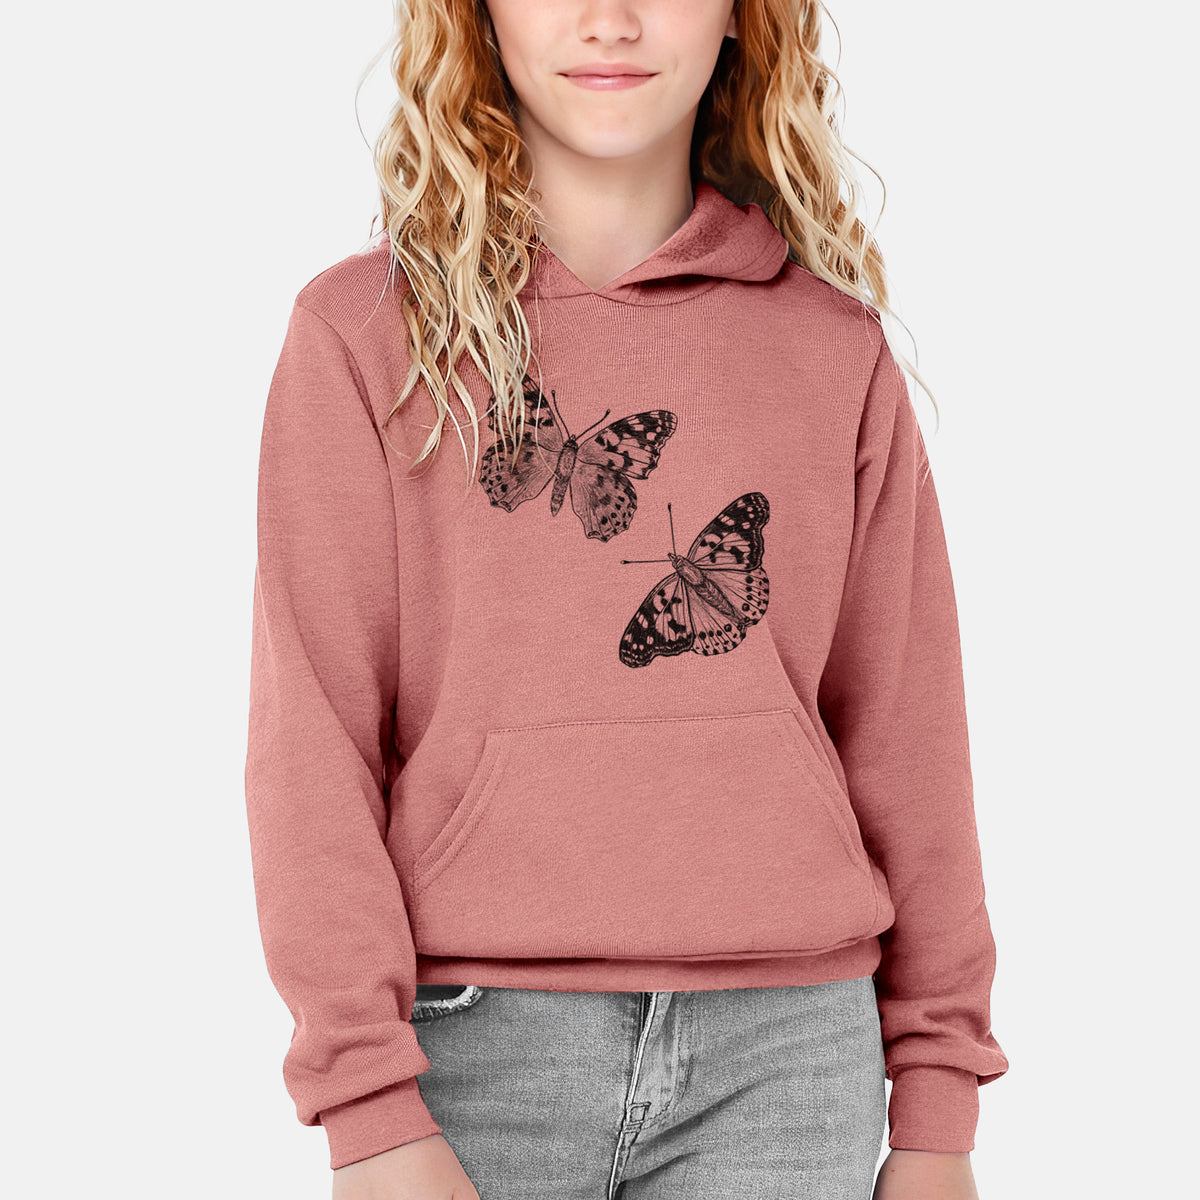 Painted Lady Butterflies - Youth Hoodie Sweatshirt